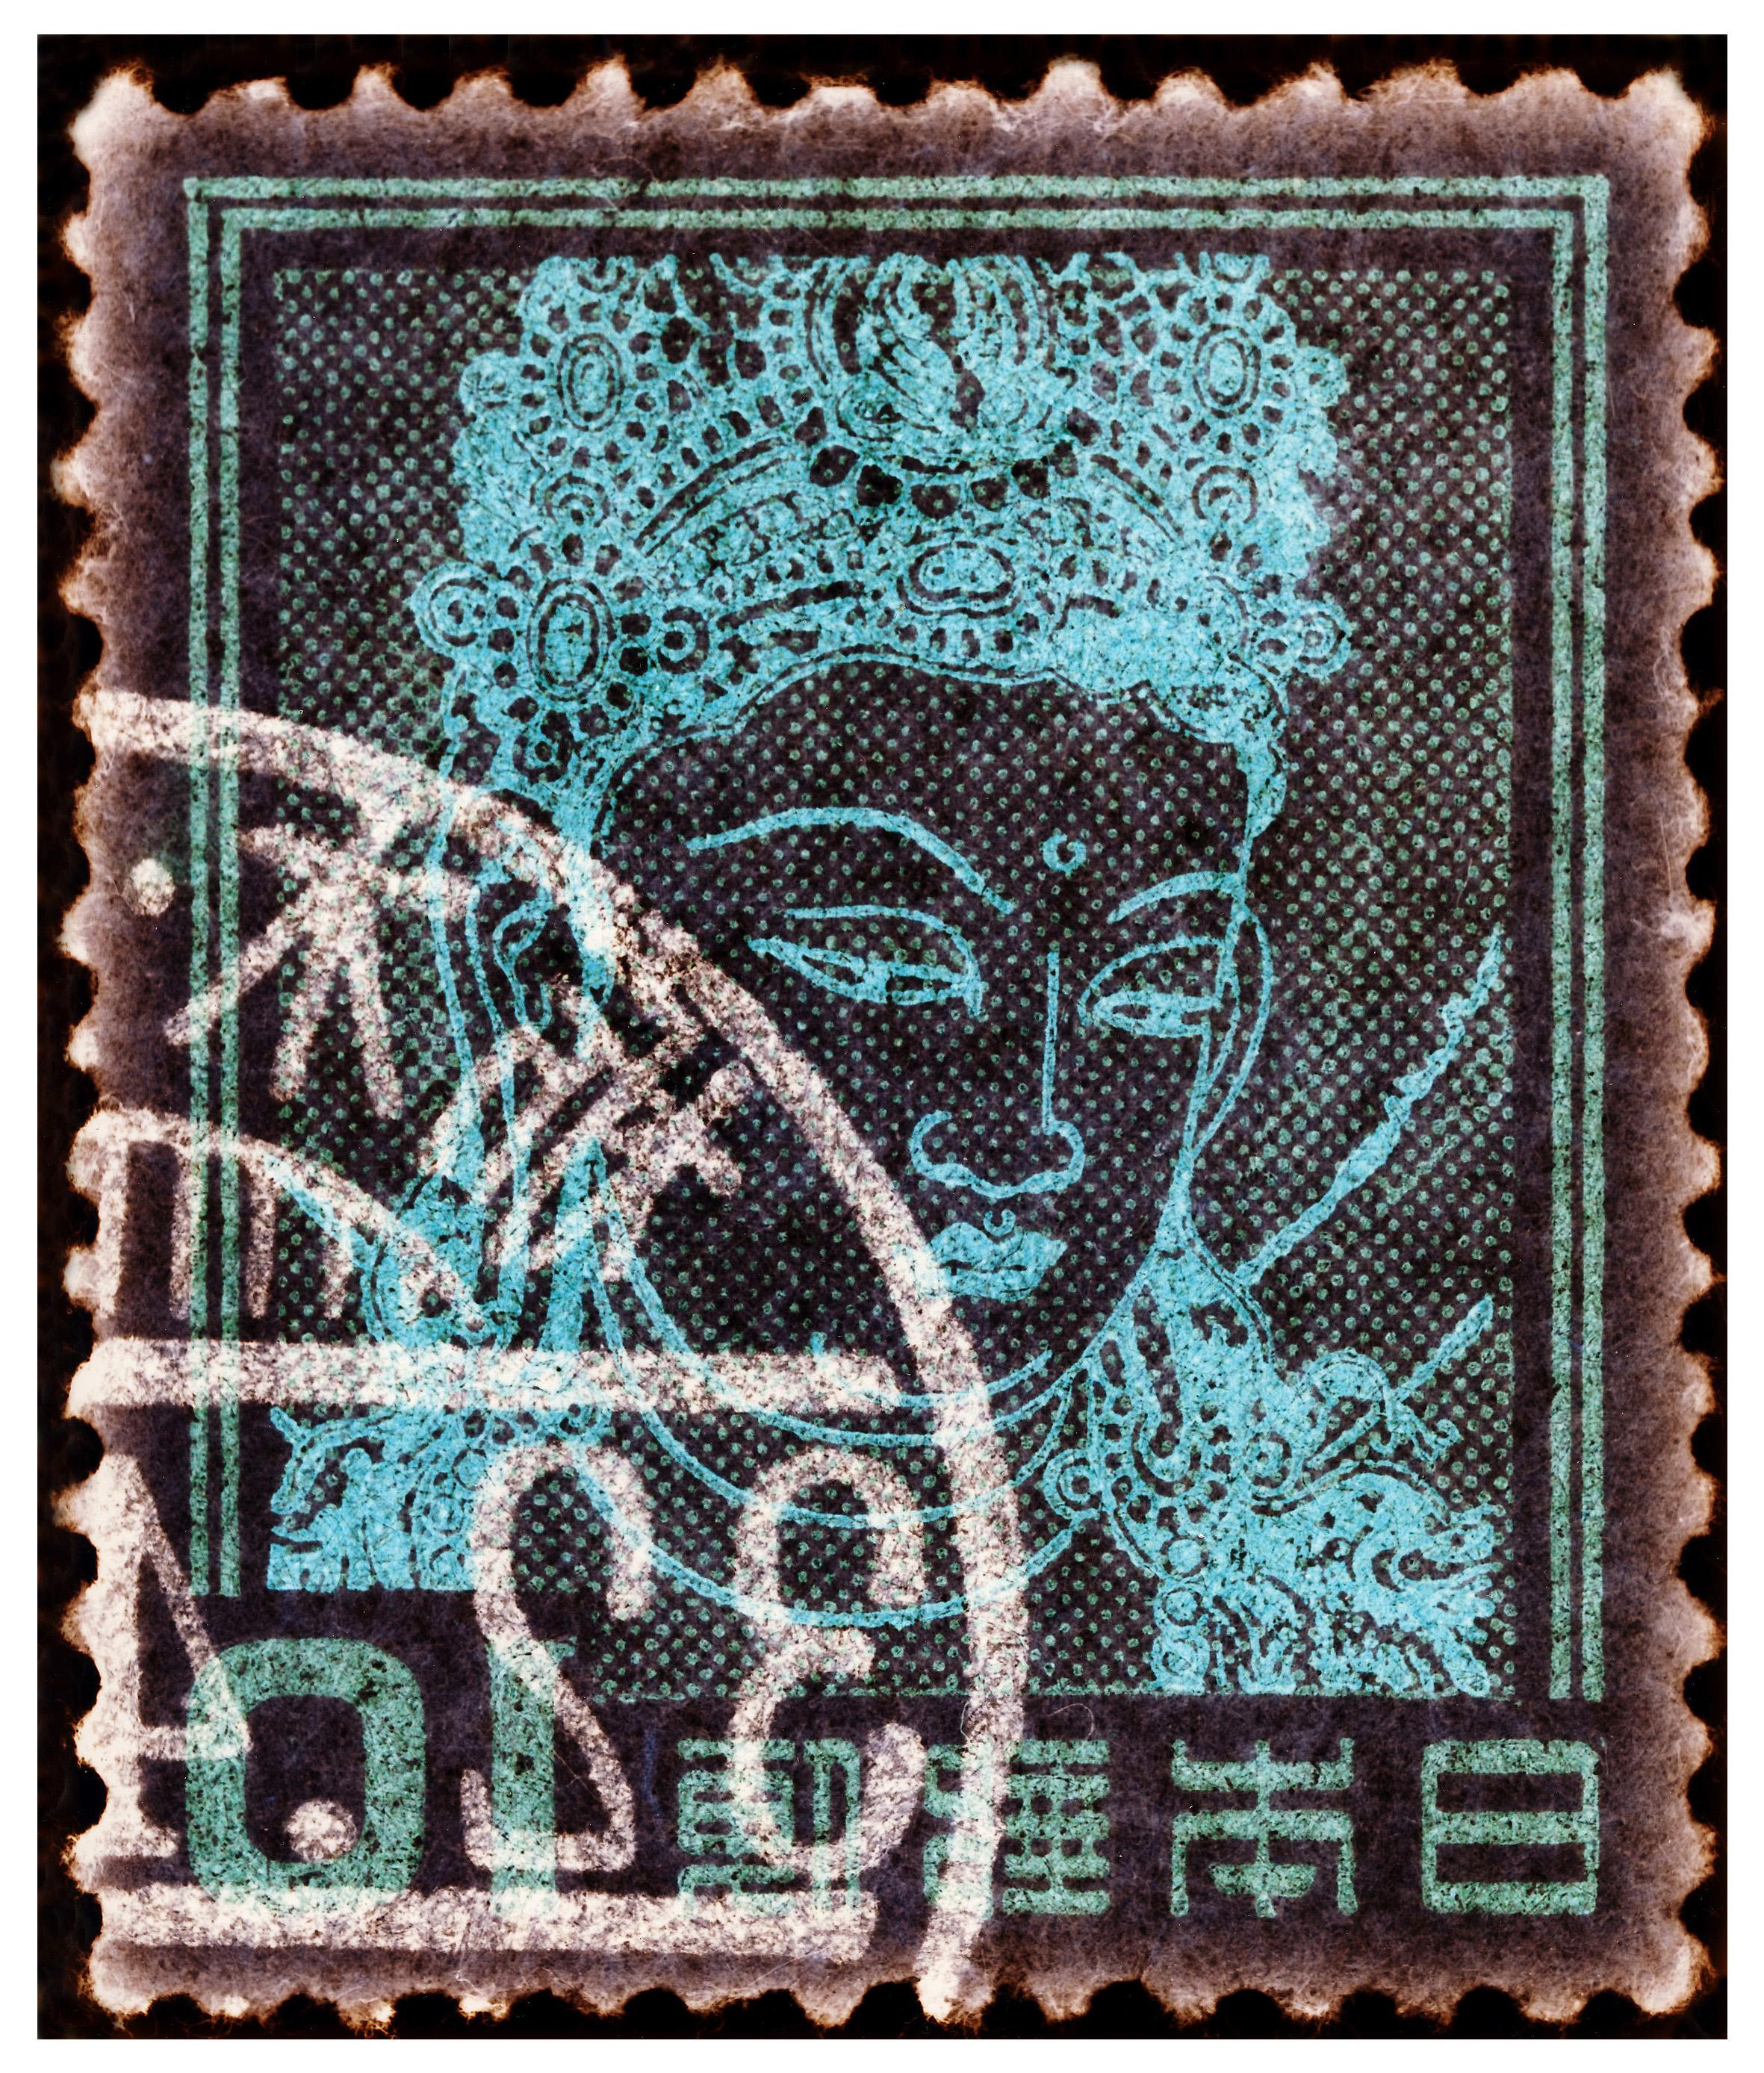 Collection de timbres, déesse Kannon (déesse bouddhiste de la misère) - Art asiatique